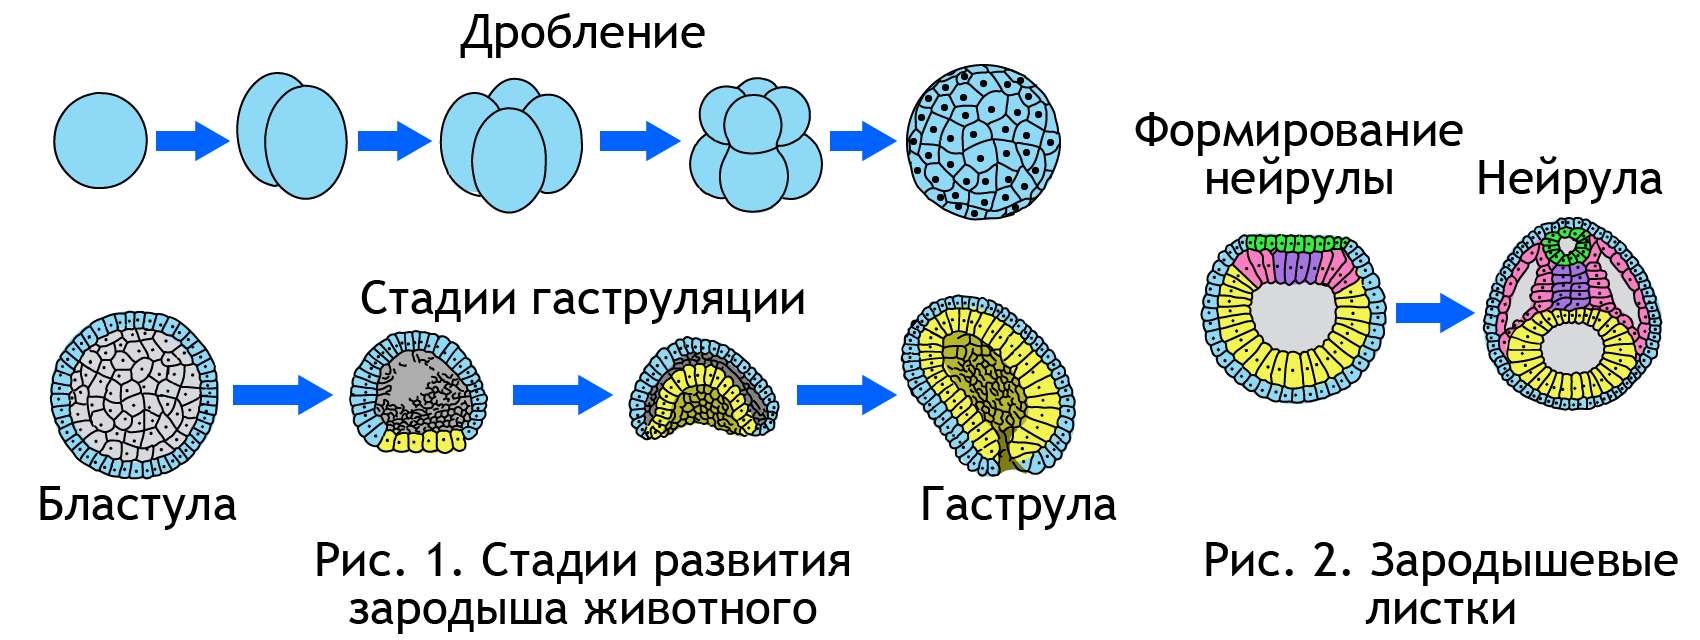 Органы размножения половые клетки оплодотворение. Прогенез картинки.